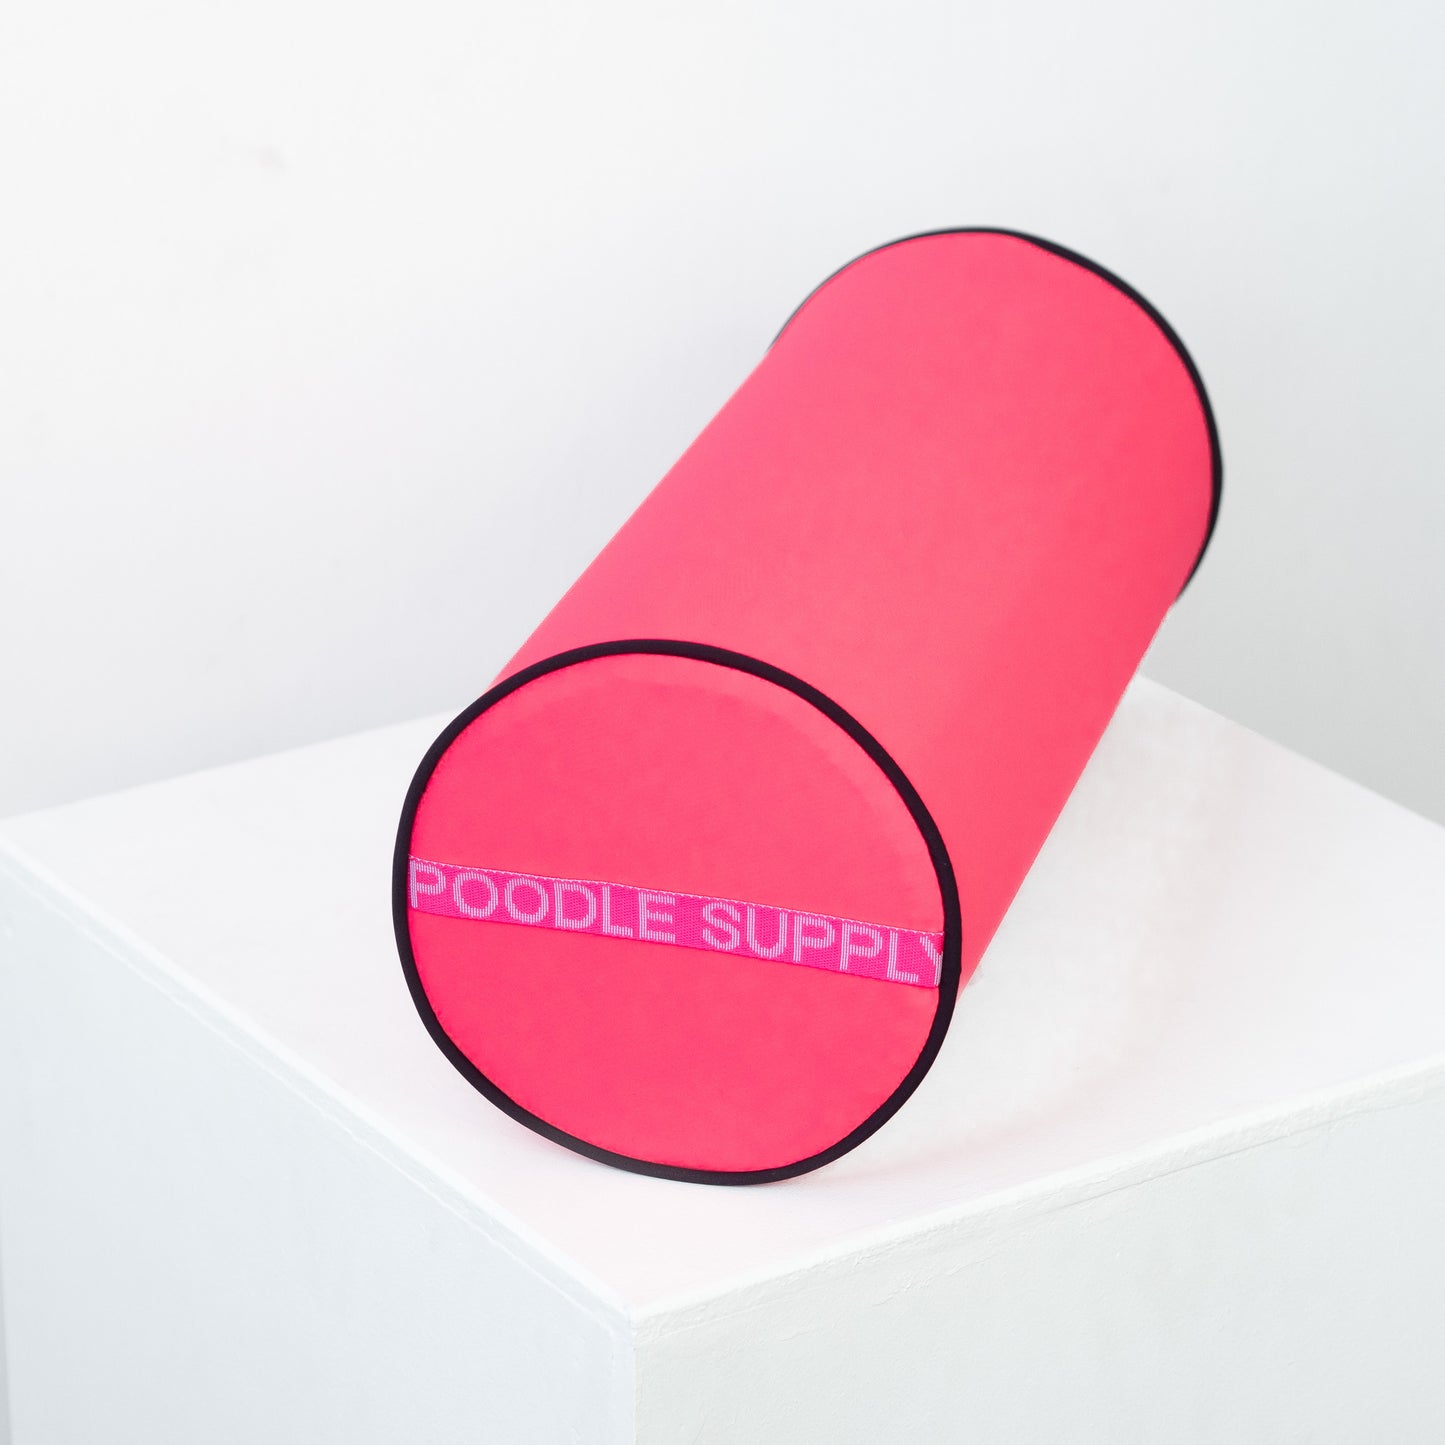 Poodle Supply Top Knot Pillow - Princess Bubblegum - Large